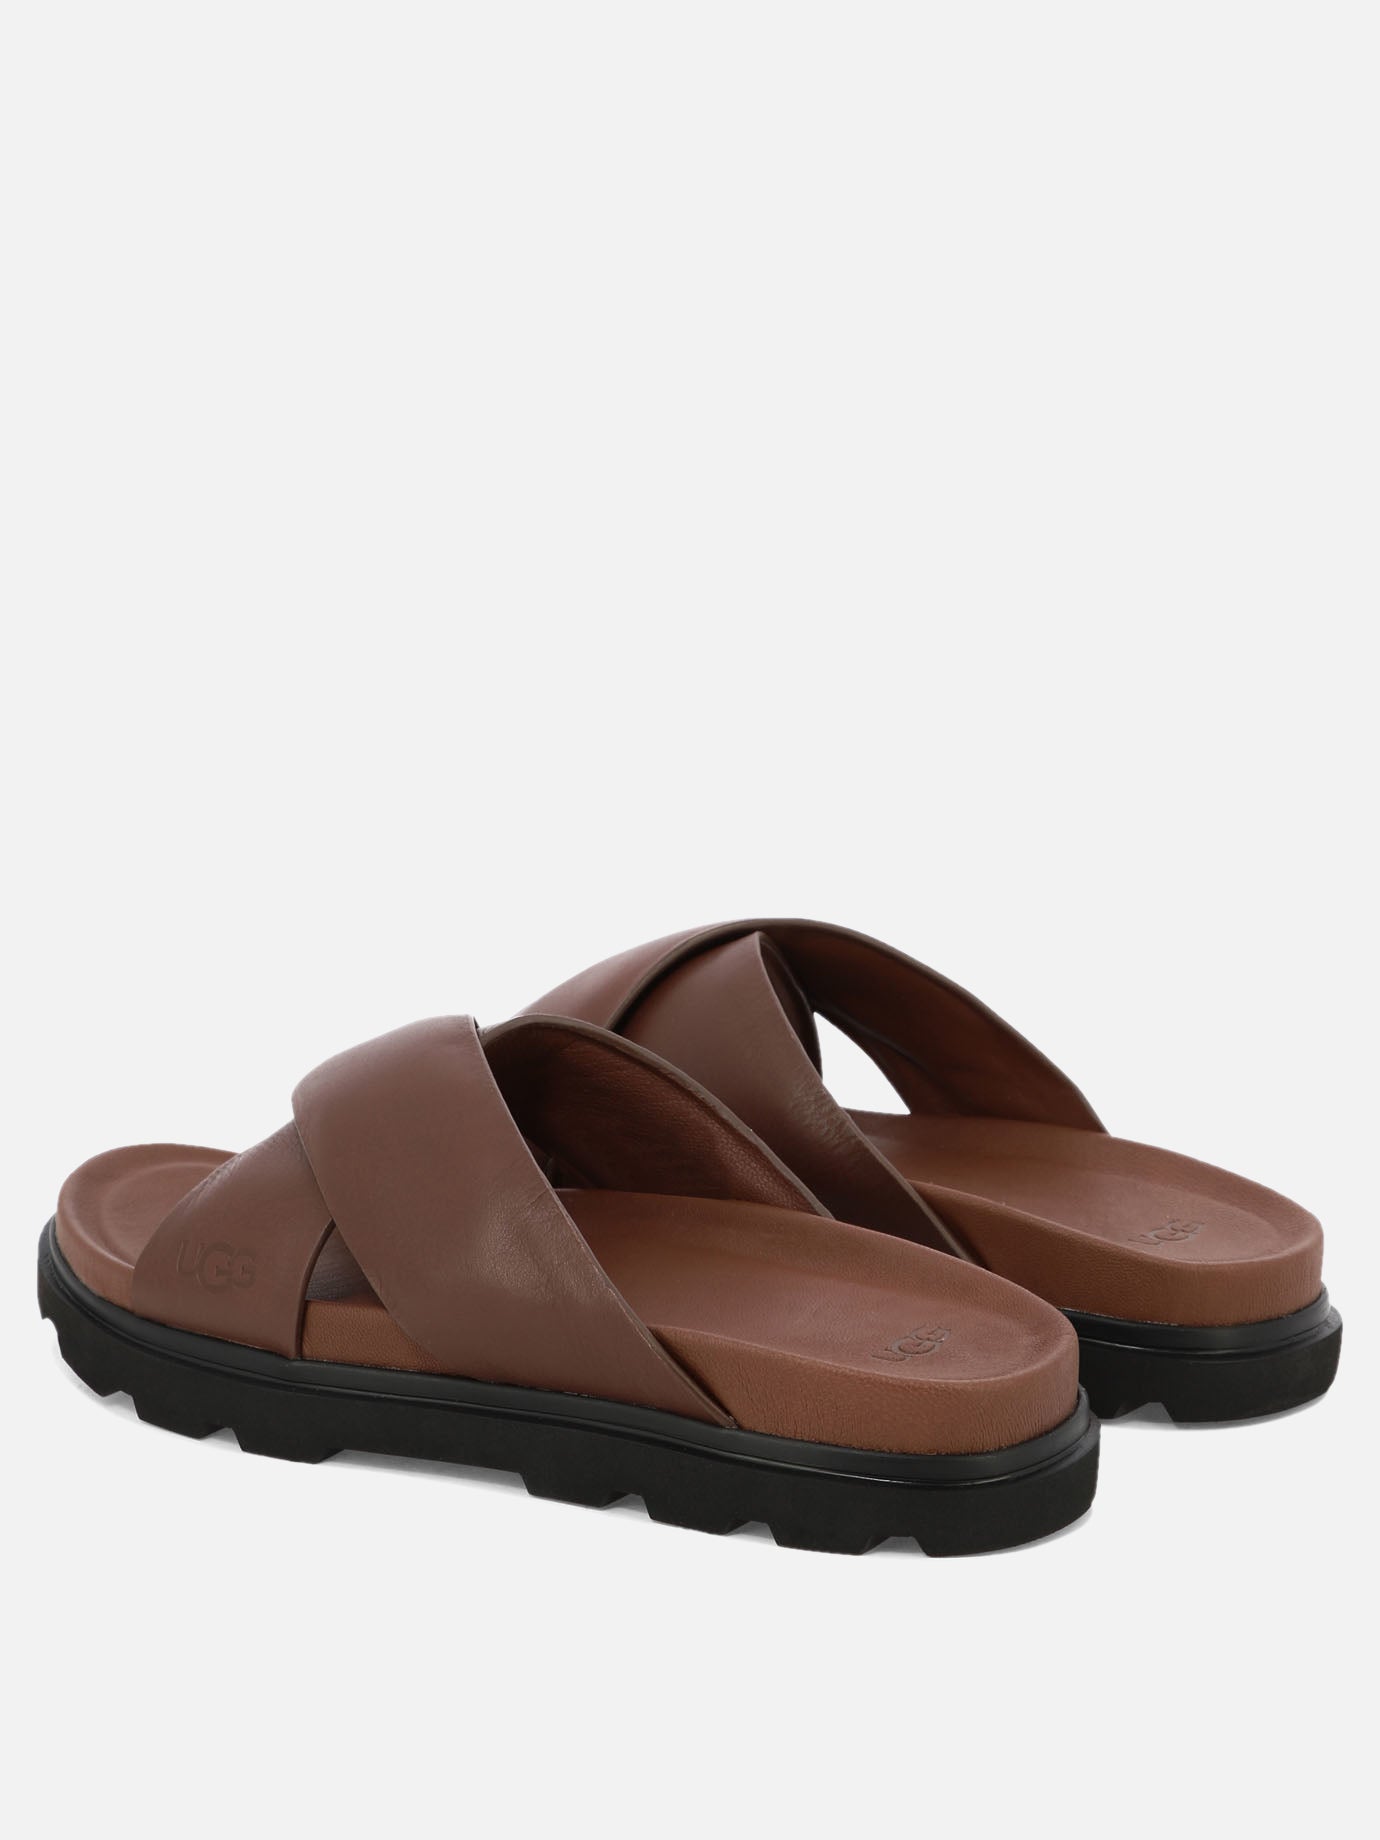 "Capitola" sandals